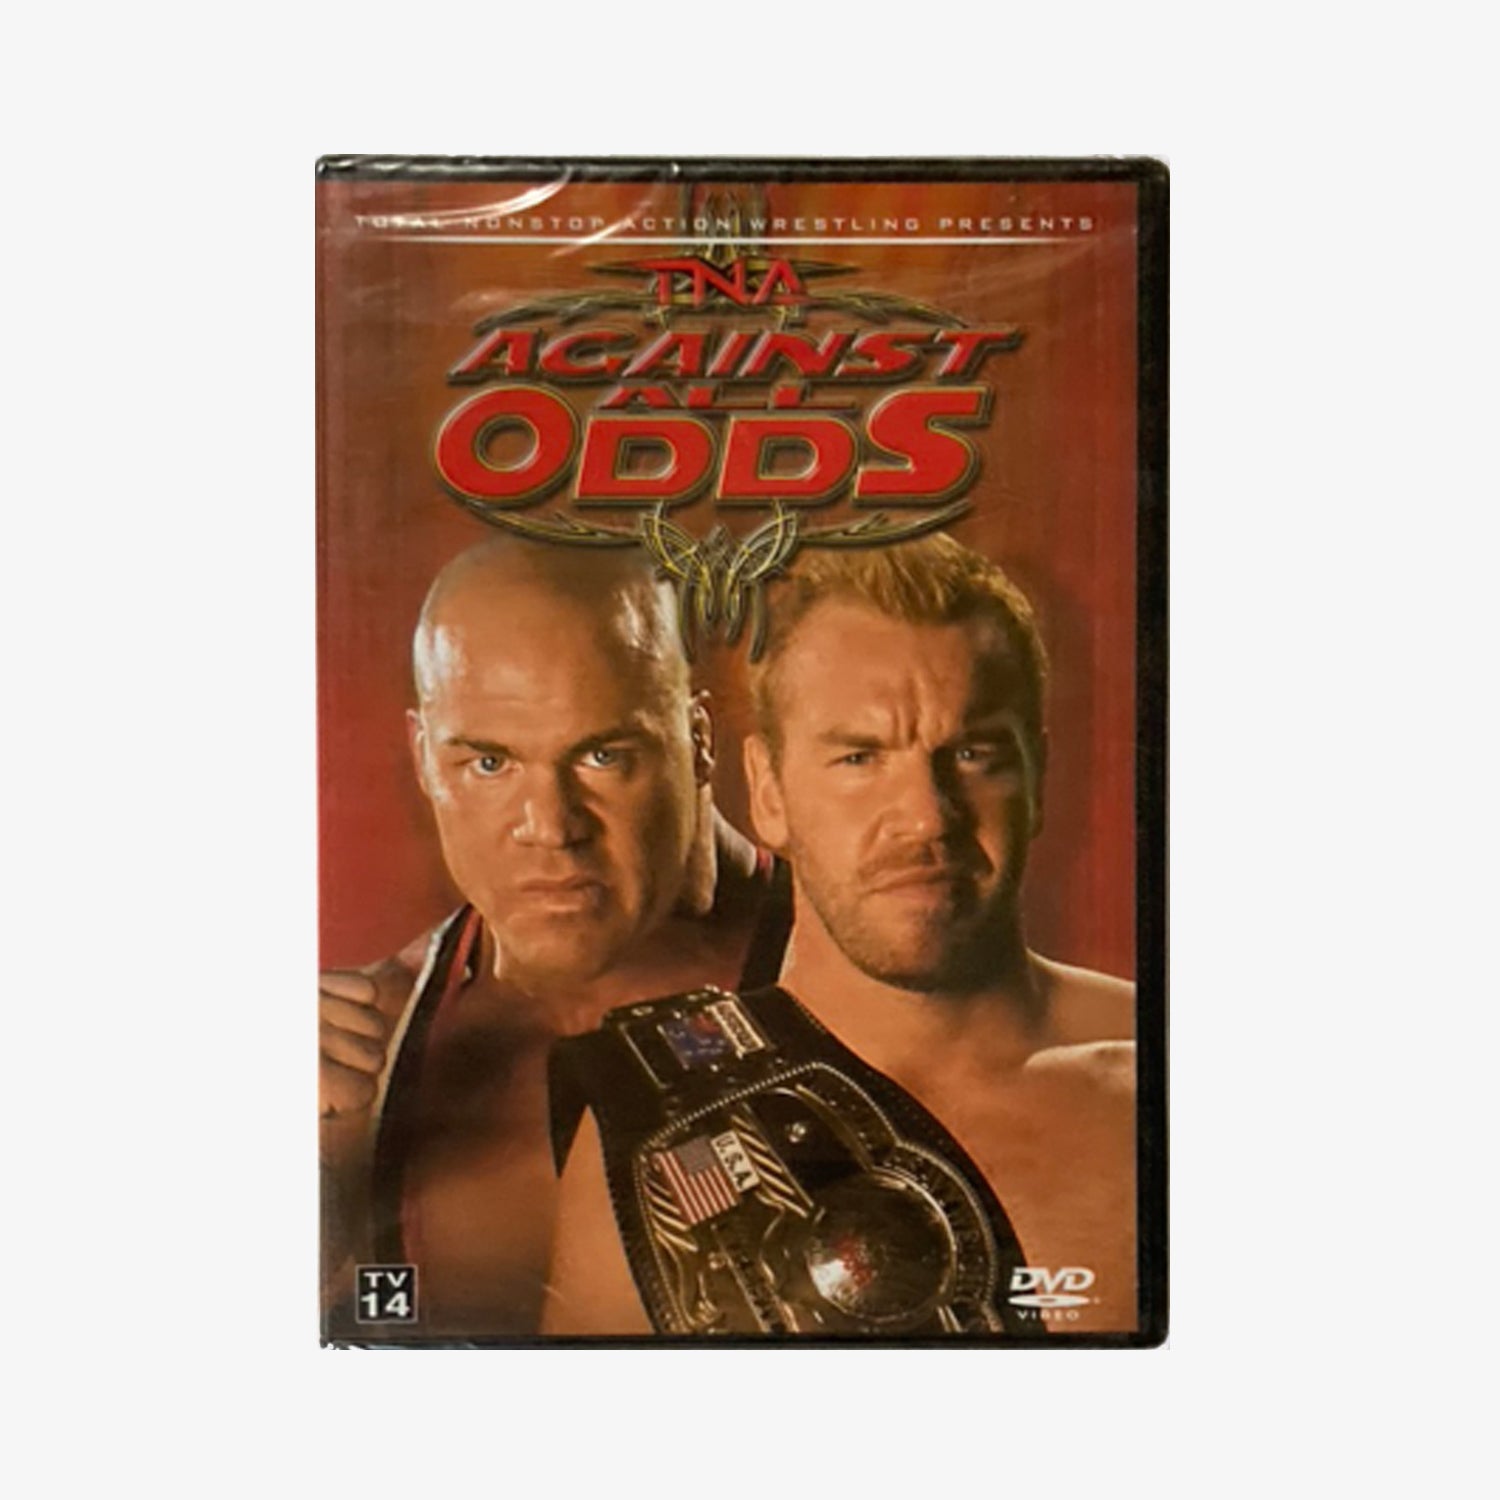 TNA Wrestling Against All Odds 2007 DVD from Fightabilia.com